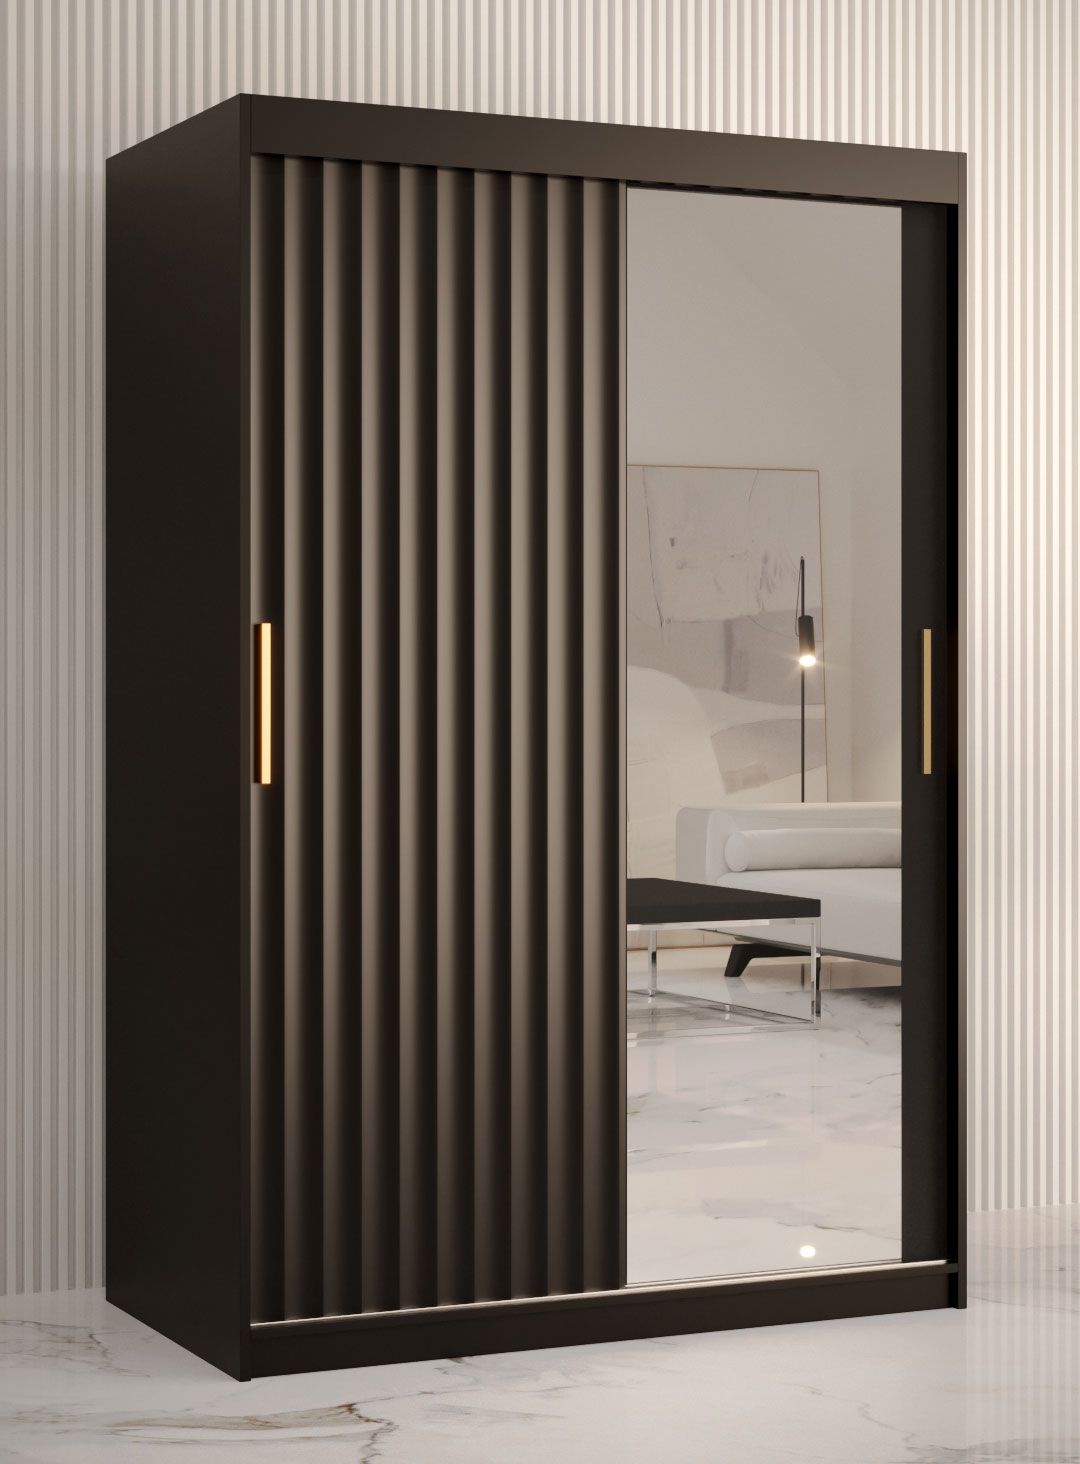 Kledingkast met één deur met spiegel Balmenhorn 80, kleur: mat zwart - afmetingen: 200 x 120 x 62 cm (H x B x D), met voldoende opbergruimte